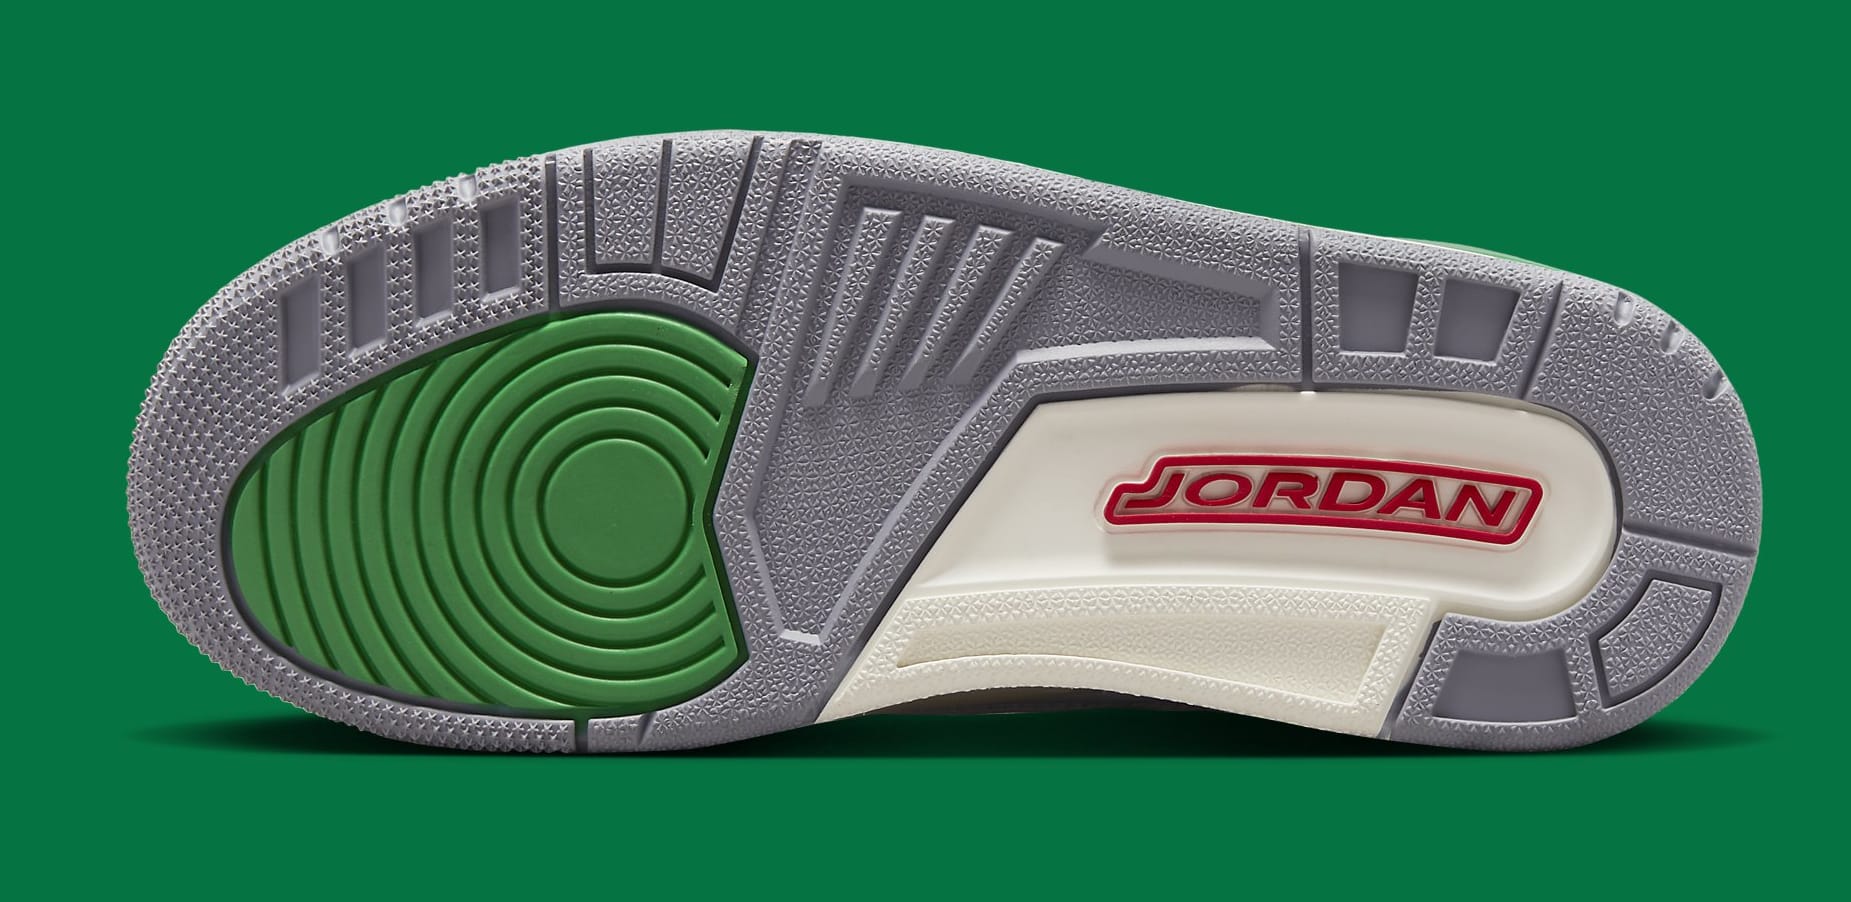 Air Jordan 3 Retro Women's 'Lucky Green' CK9246 136 Outsole